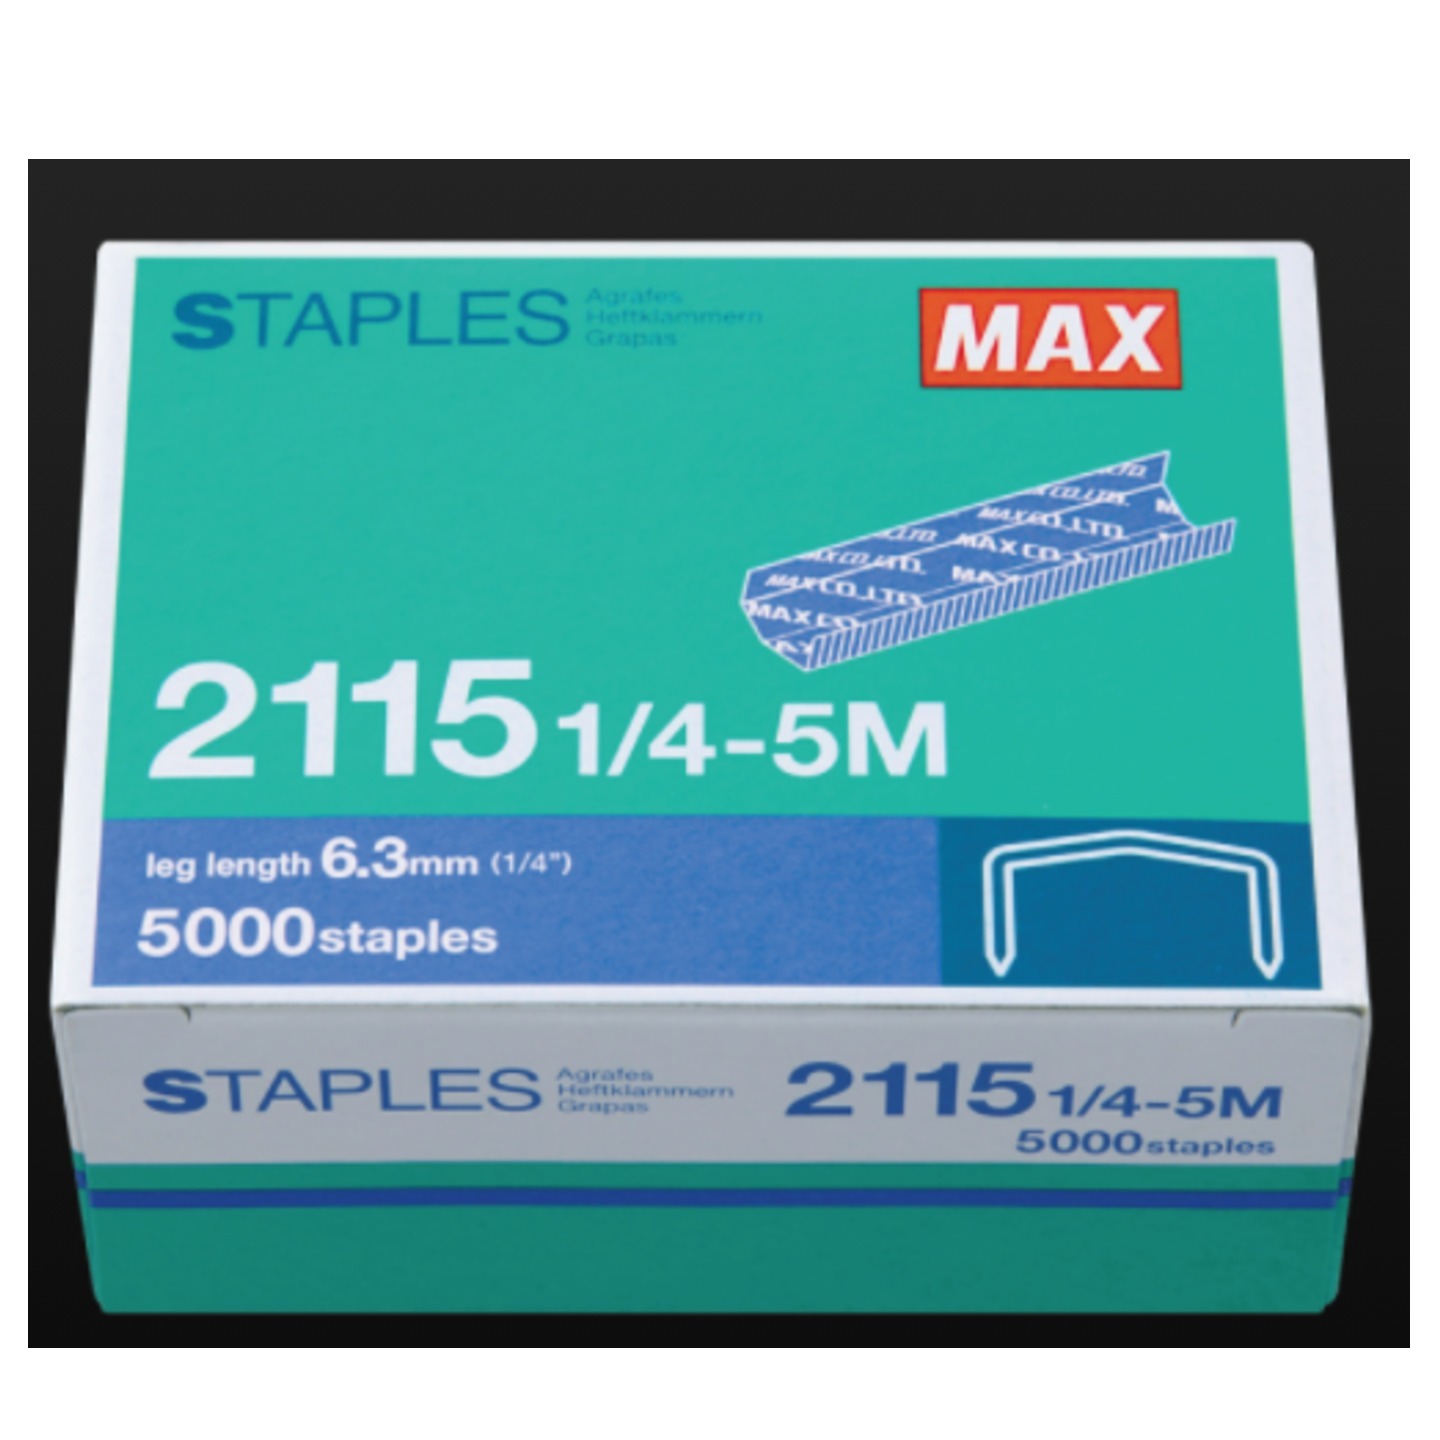 2115 14-5M Max Staples